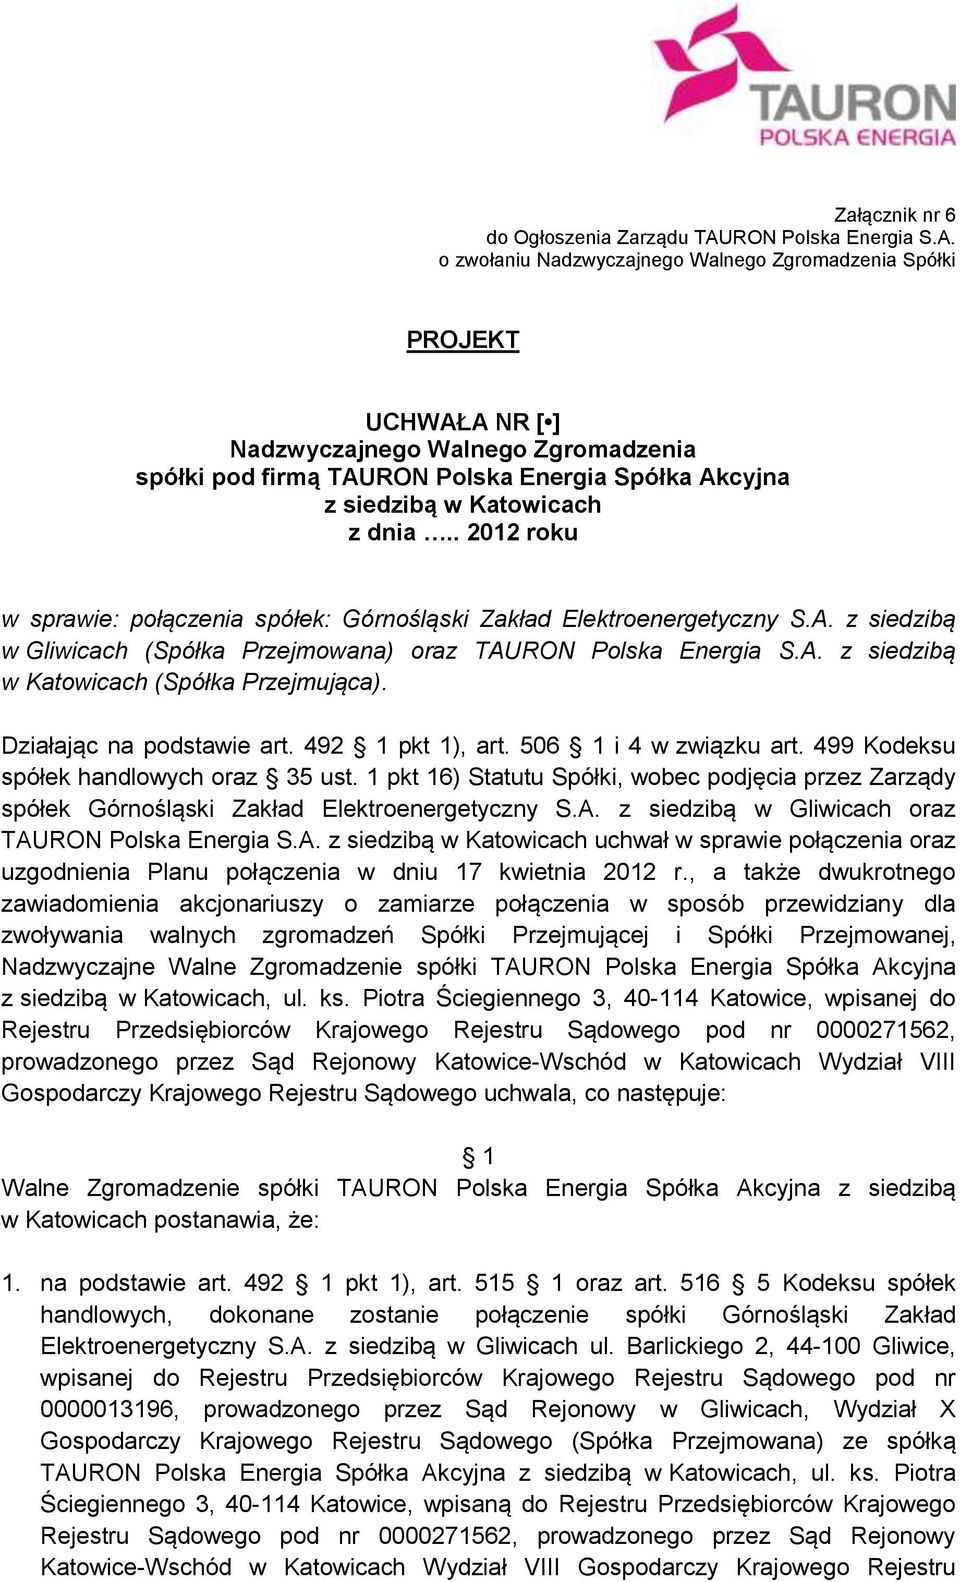 1 pkt 16) Statutu Spółki, wobec podjęcia przez Zarządy spółek Górnośląski Zakład Elektroenergetyczny S.A. z siedzibą w Gliwicach oraz TAURON Polska Energia S.A. uchwał w sprawie połączenia oraz uzgodnienia Planu połączenia w dniu 17 kwietnia 2012 r.